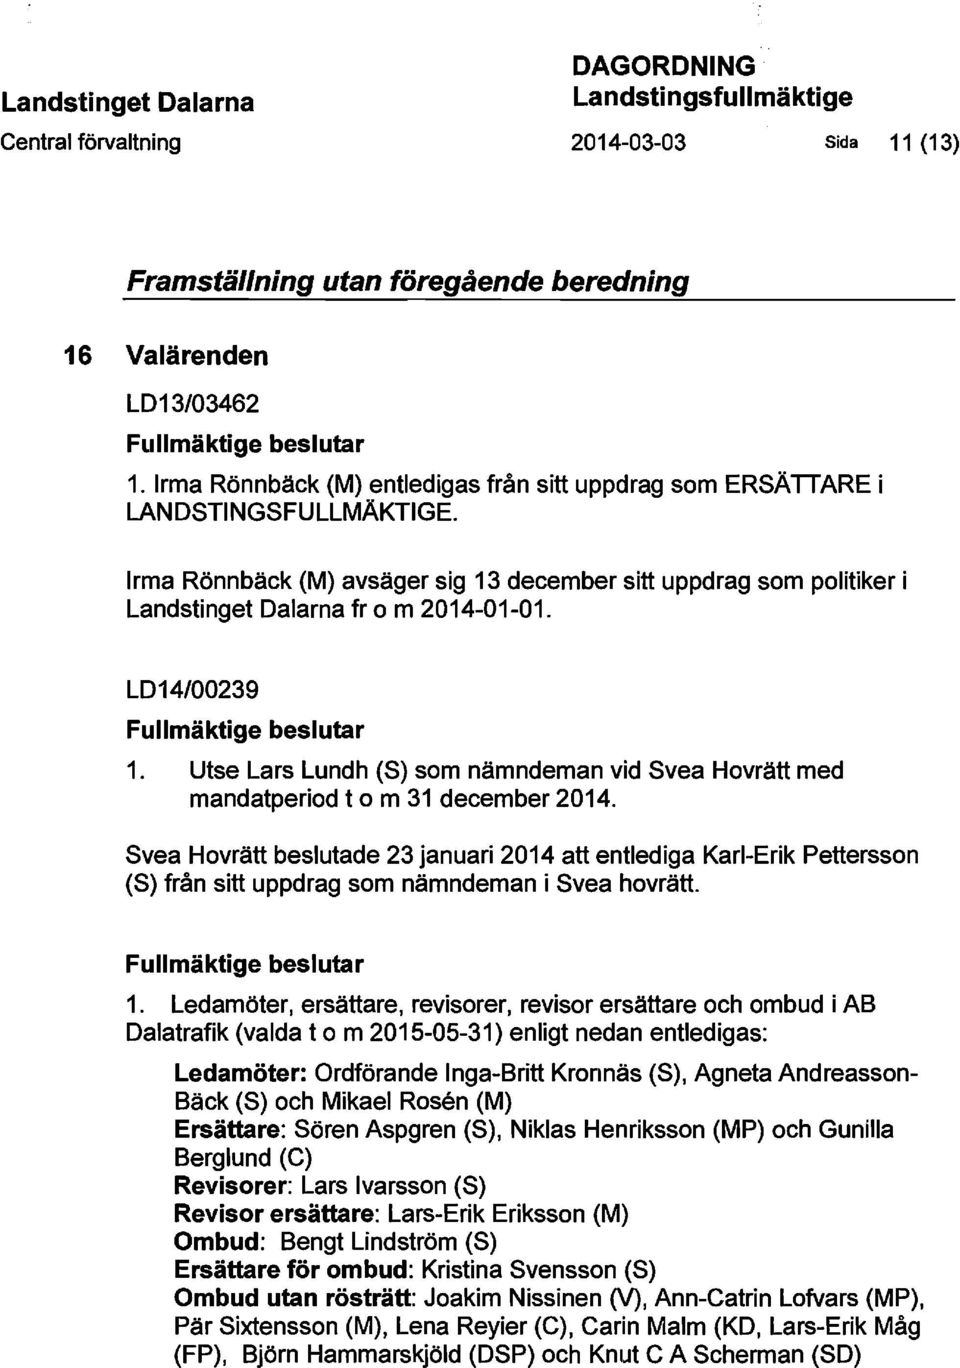 Utse Lars Lundh (S) som nämndeman vid Svea Hovrätt med mandatperiod t o m 31 december 2014.